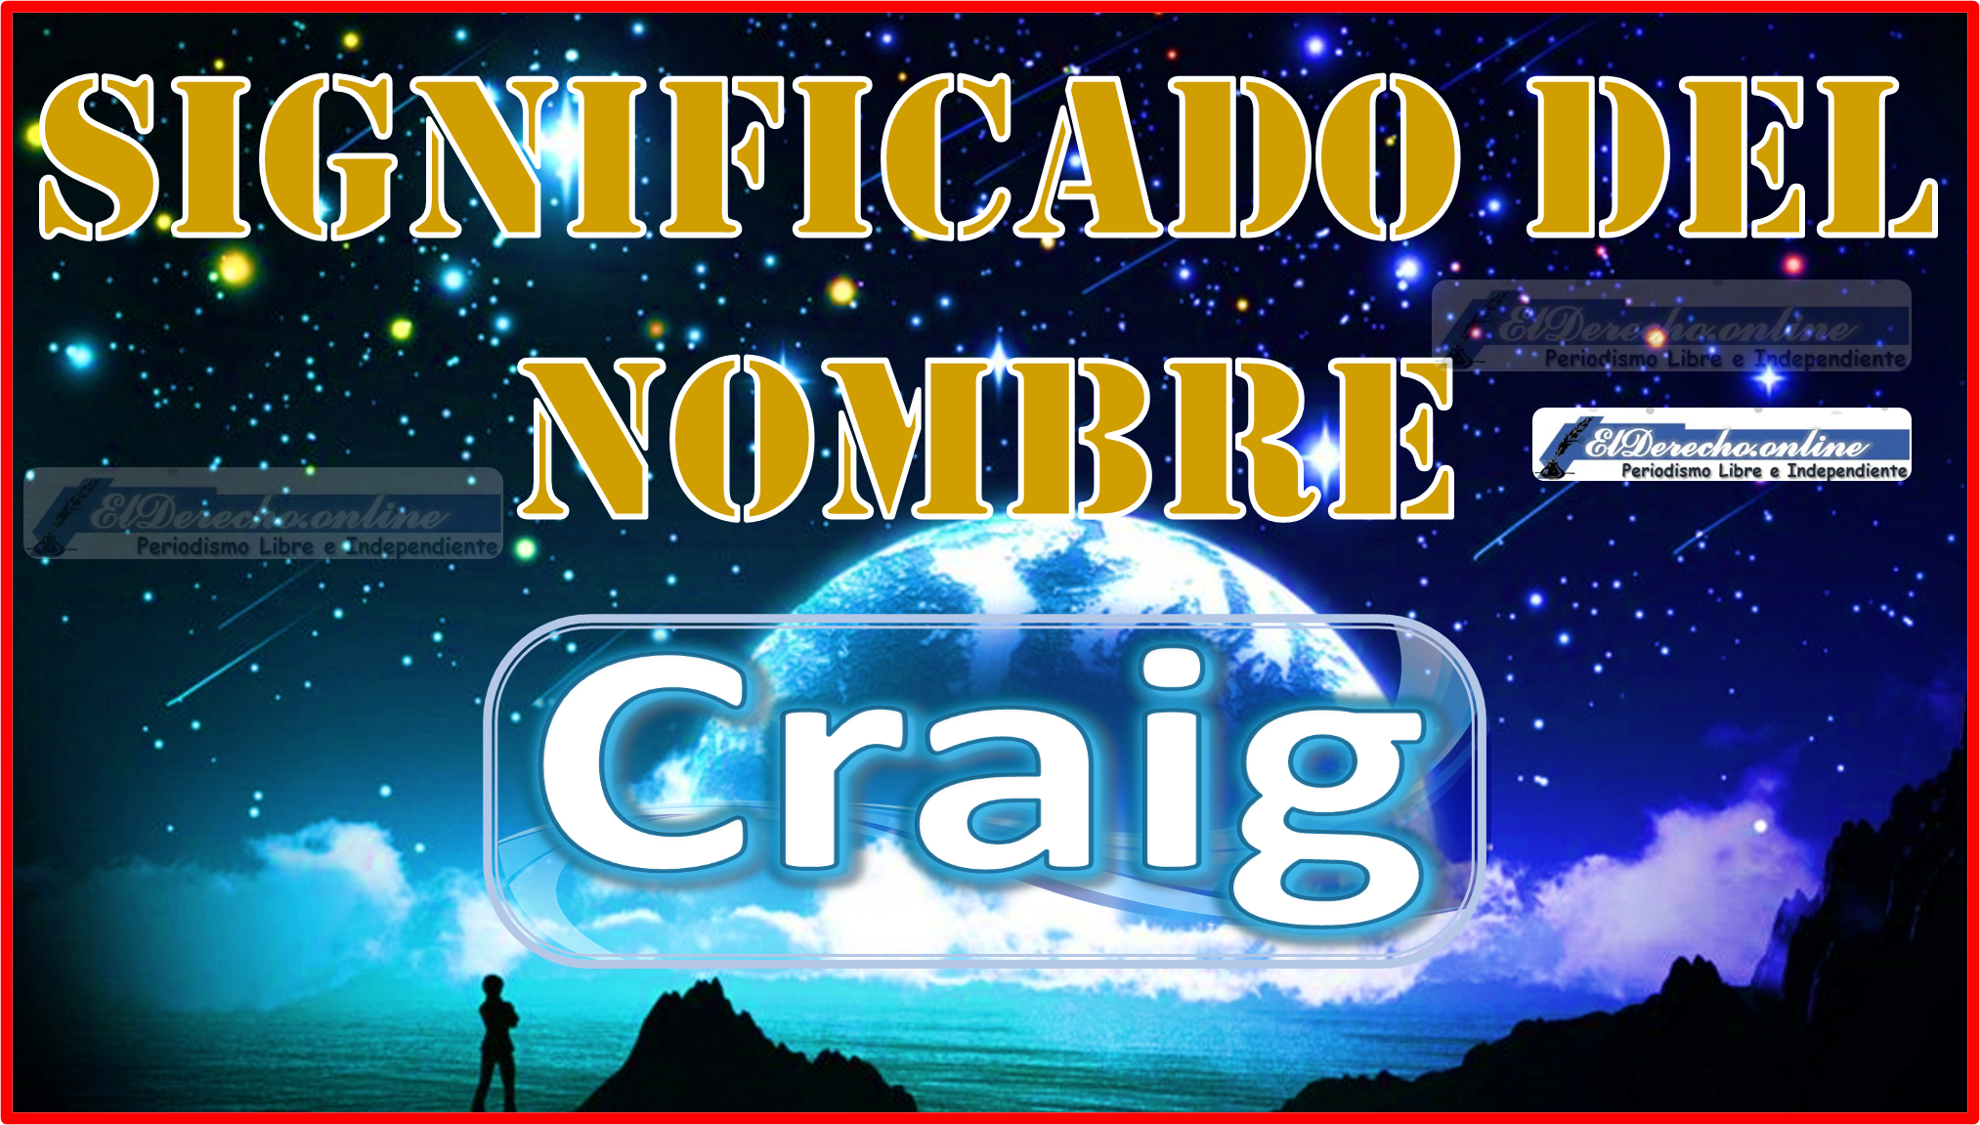 Significado del nombre Craig, su origen y más